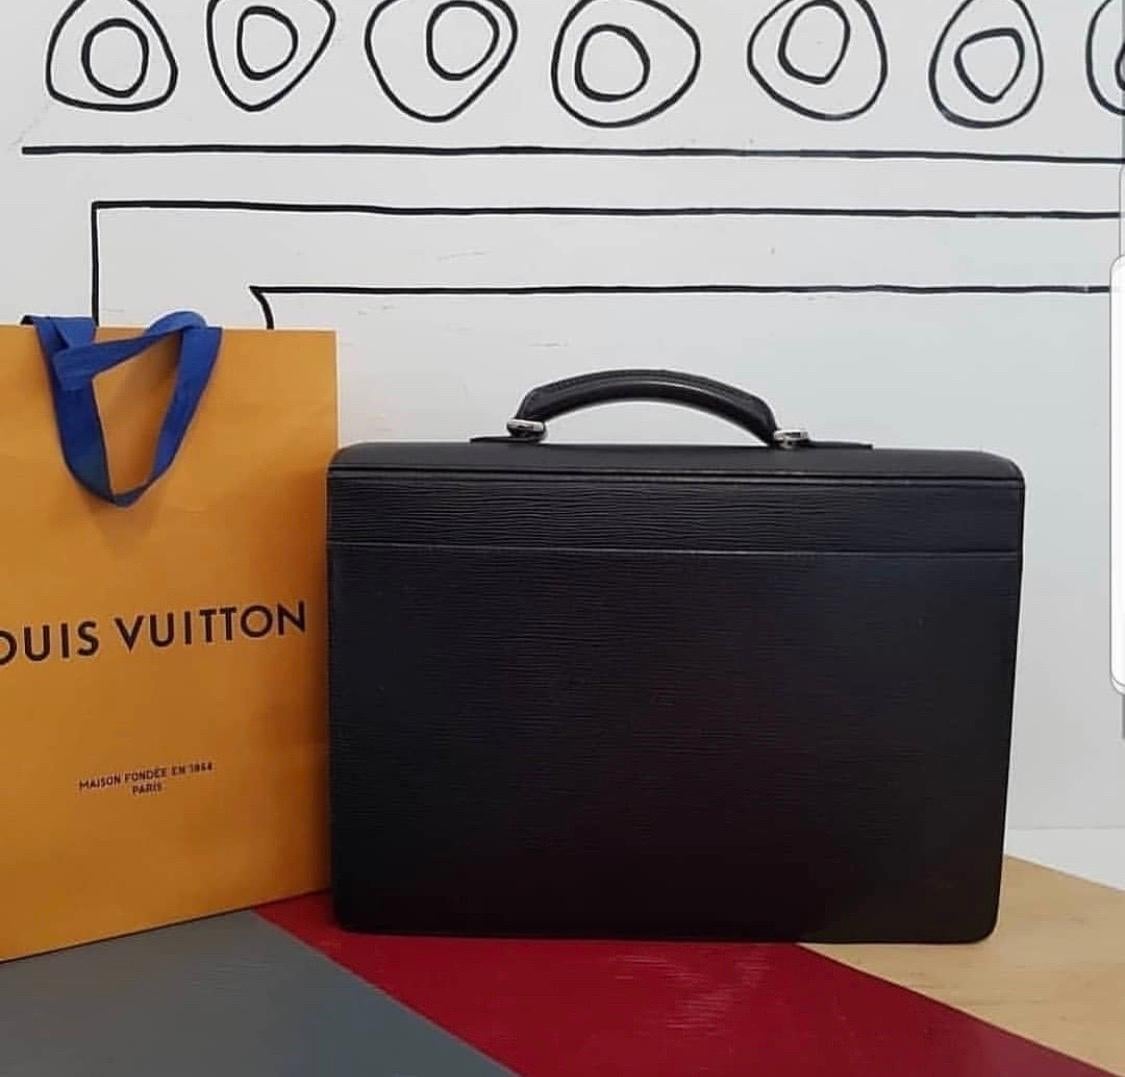 Lockit' LOUIS VUITTON Monogram CANVAS bag - VALOIS VINTAGE PARIS